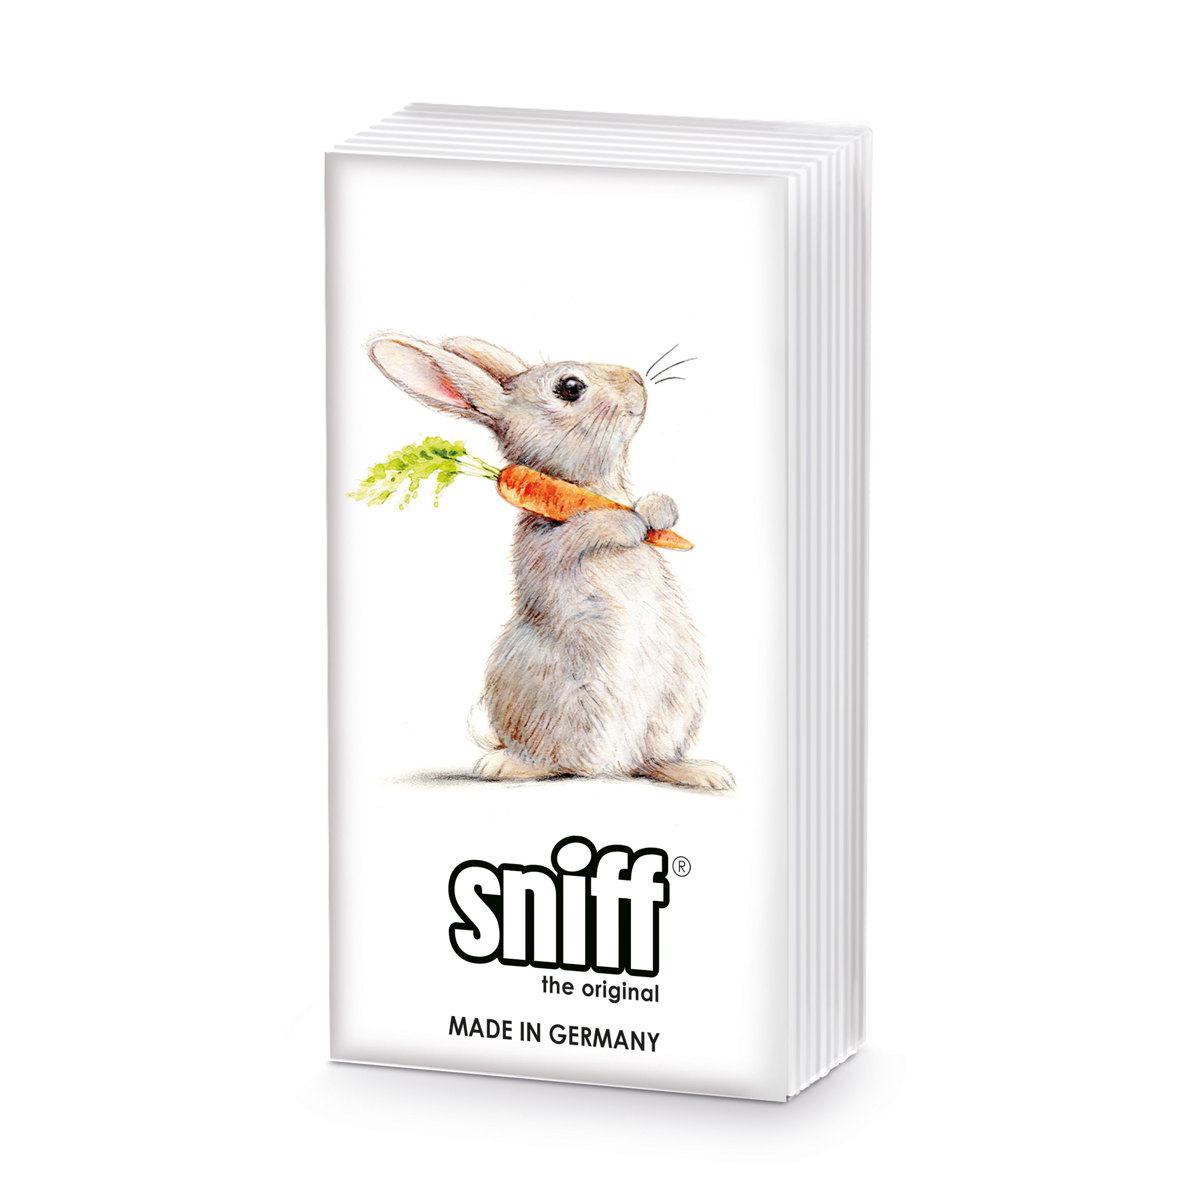 Rabbit & Carrot Sniff Tissue